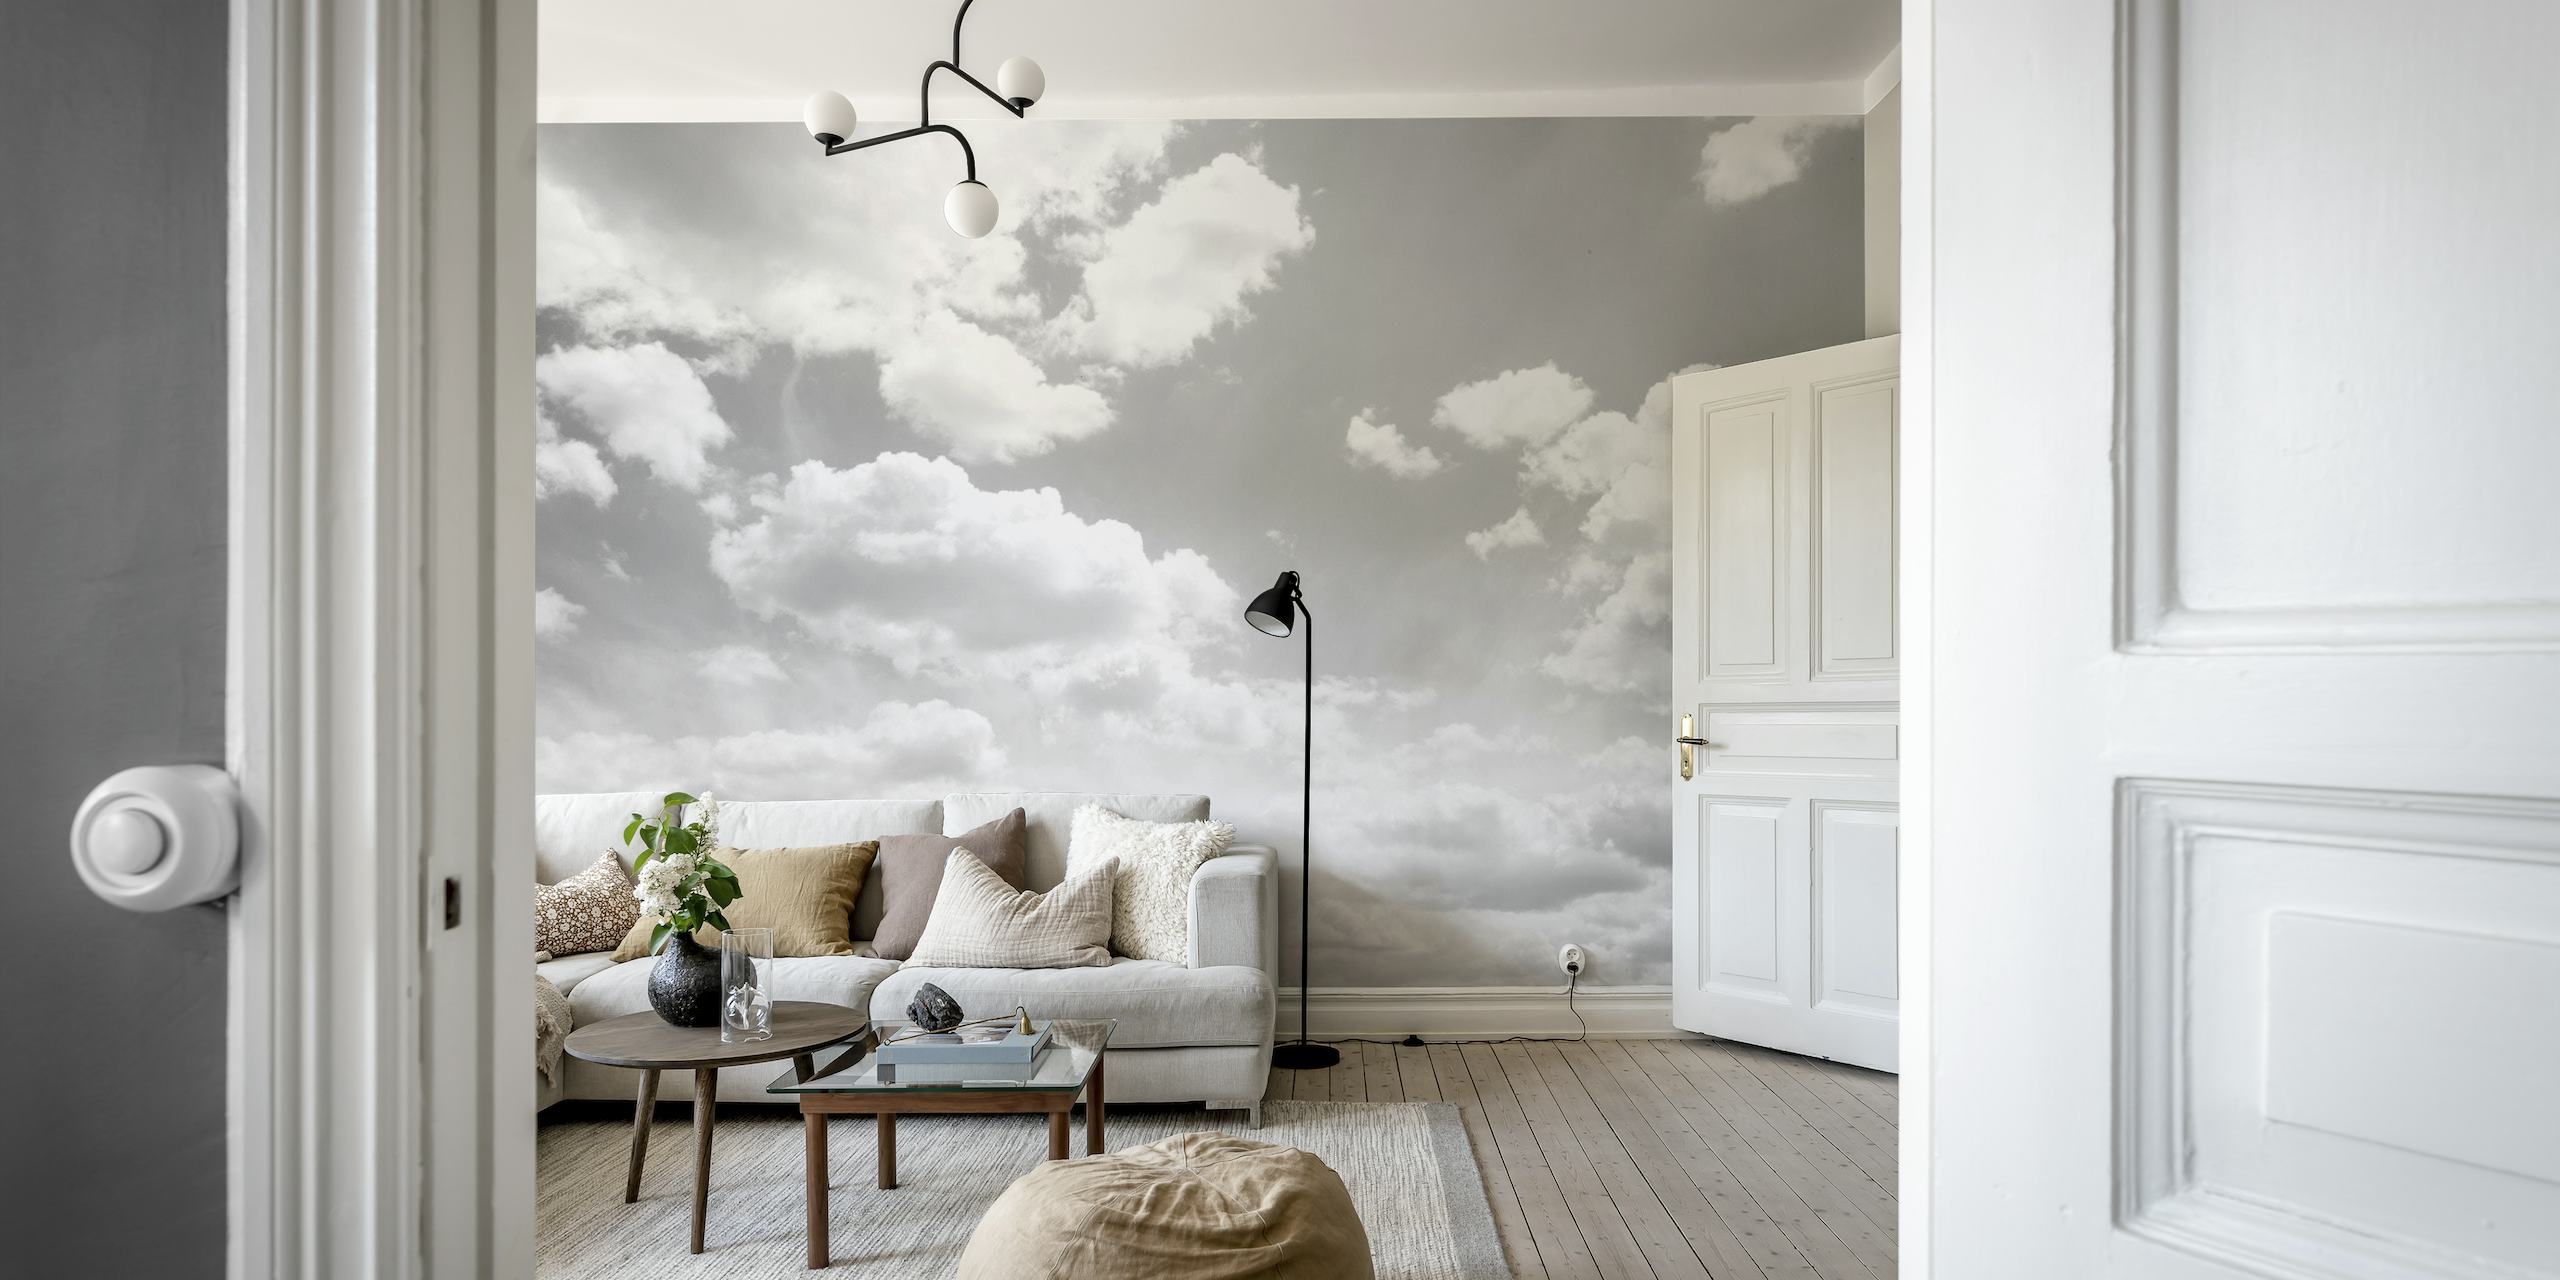 Fotomural vinílico de céu nublado com um ambiente calmo e tranquilo